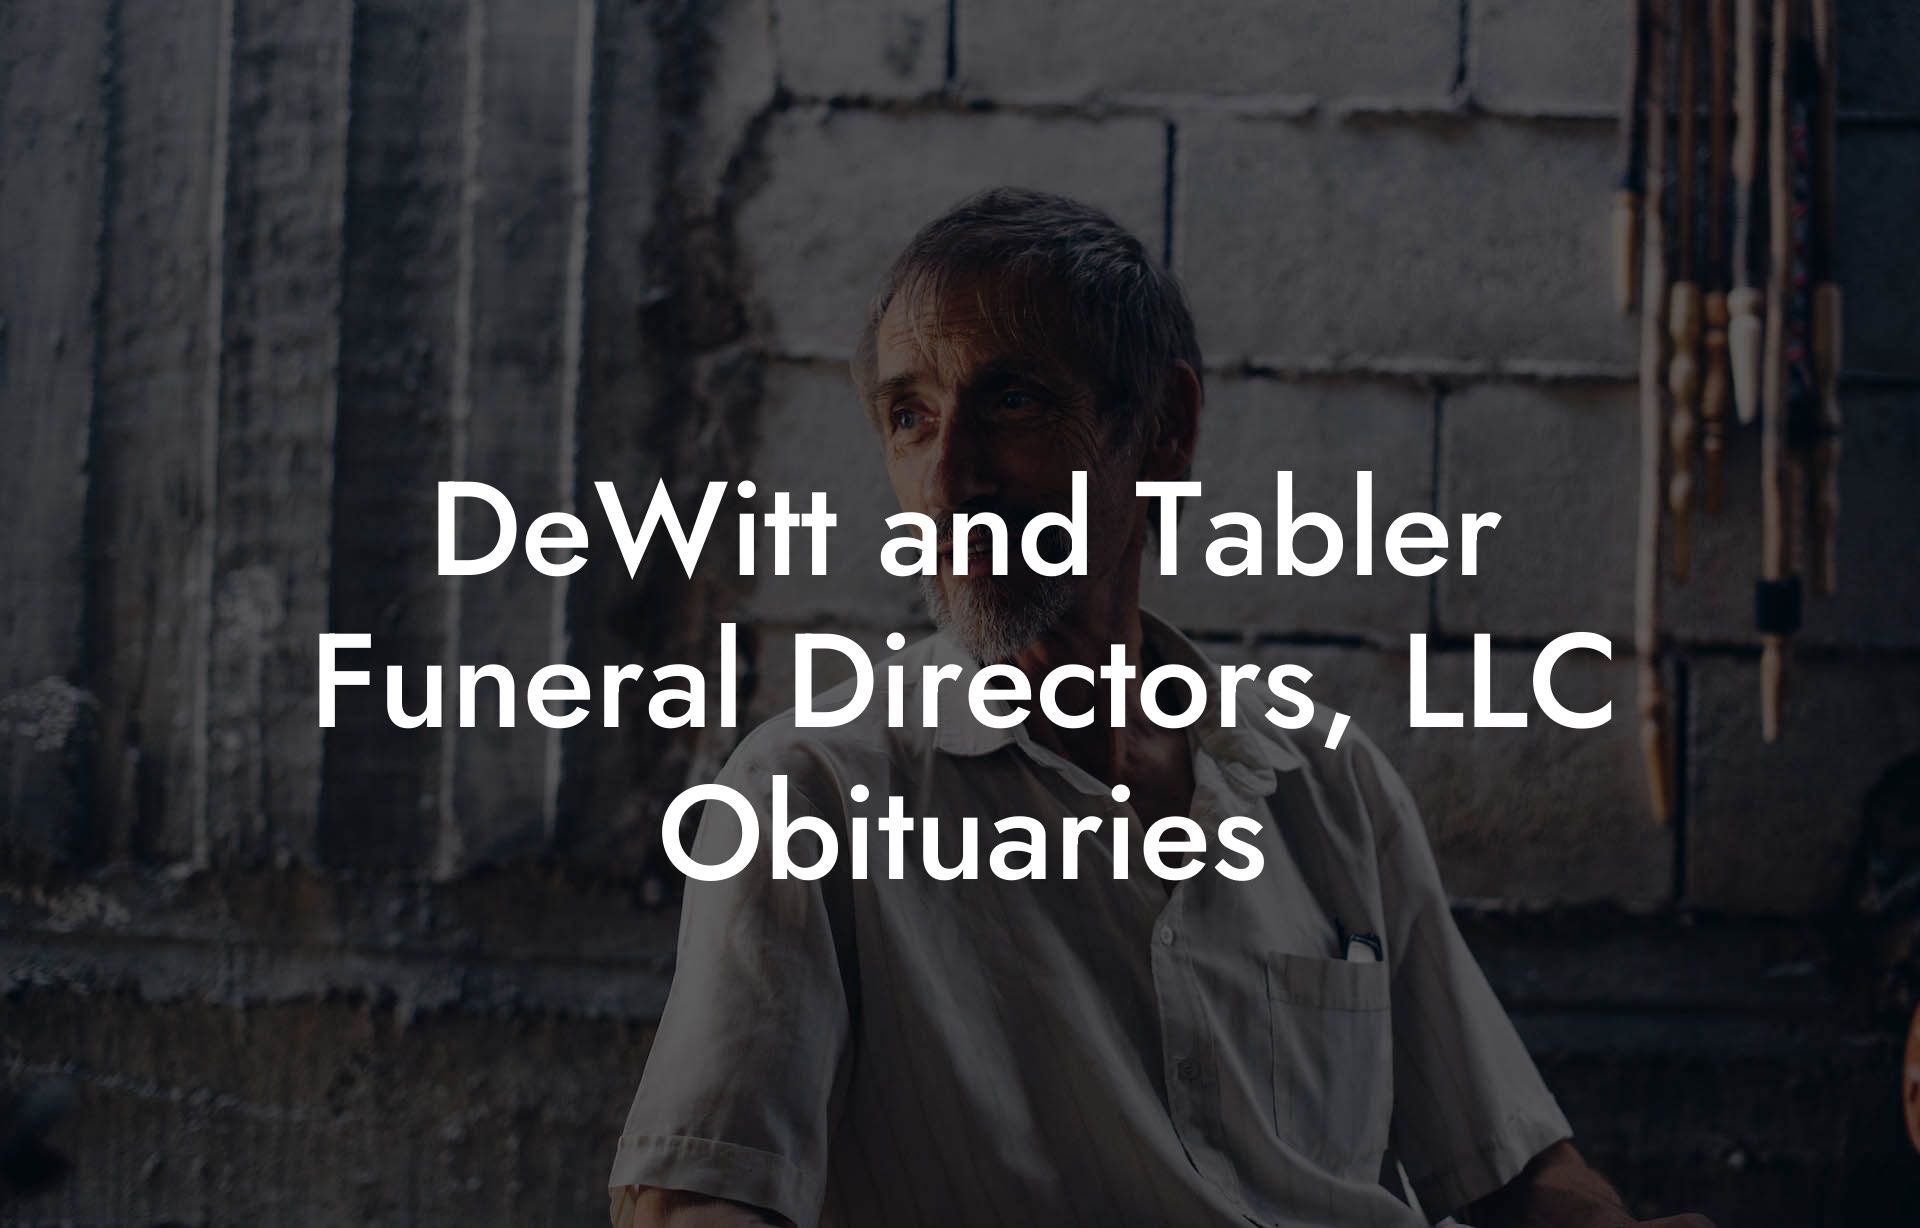 DeWitt and Tabler Funeral Directors, LLC Obituaries